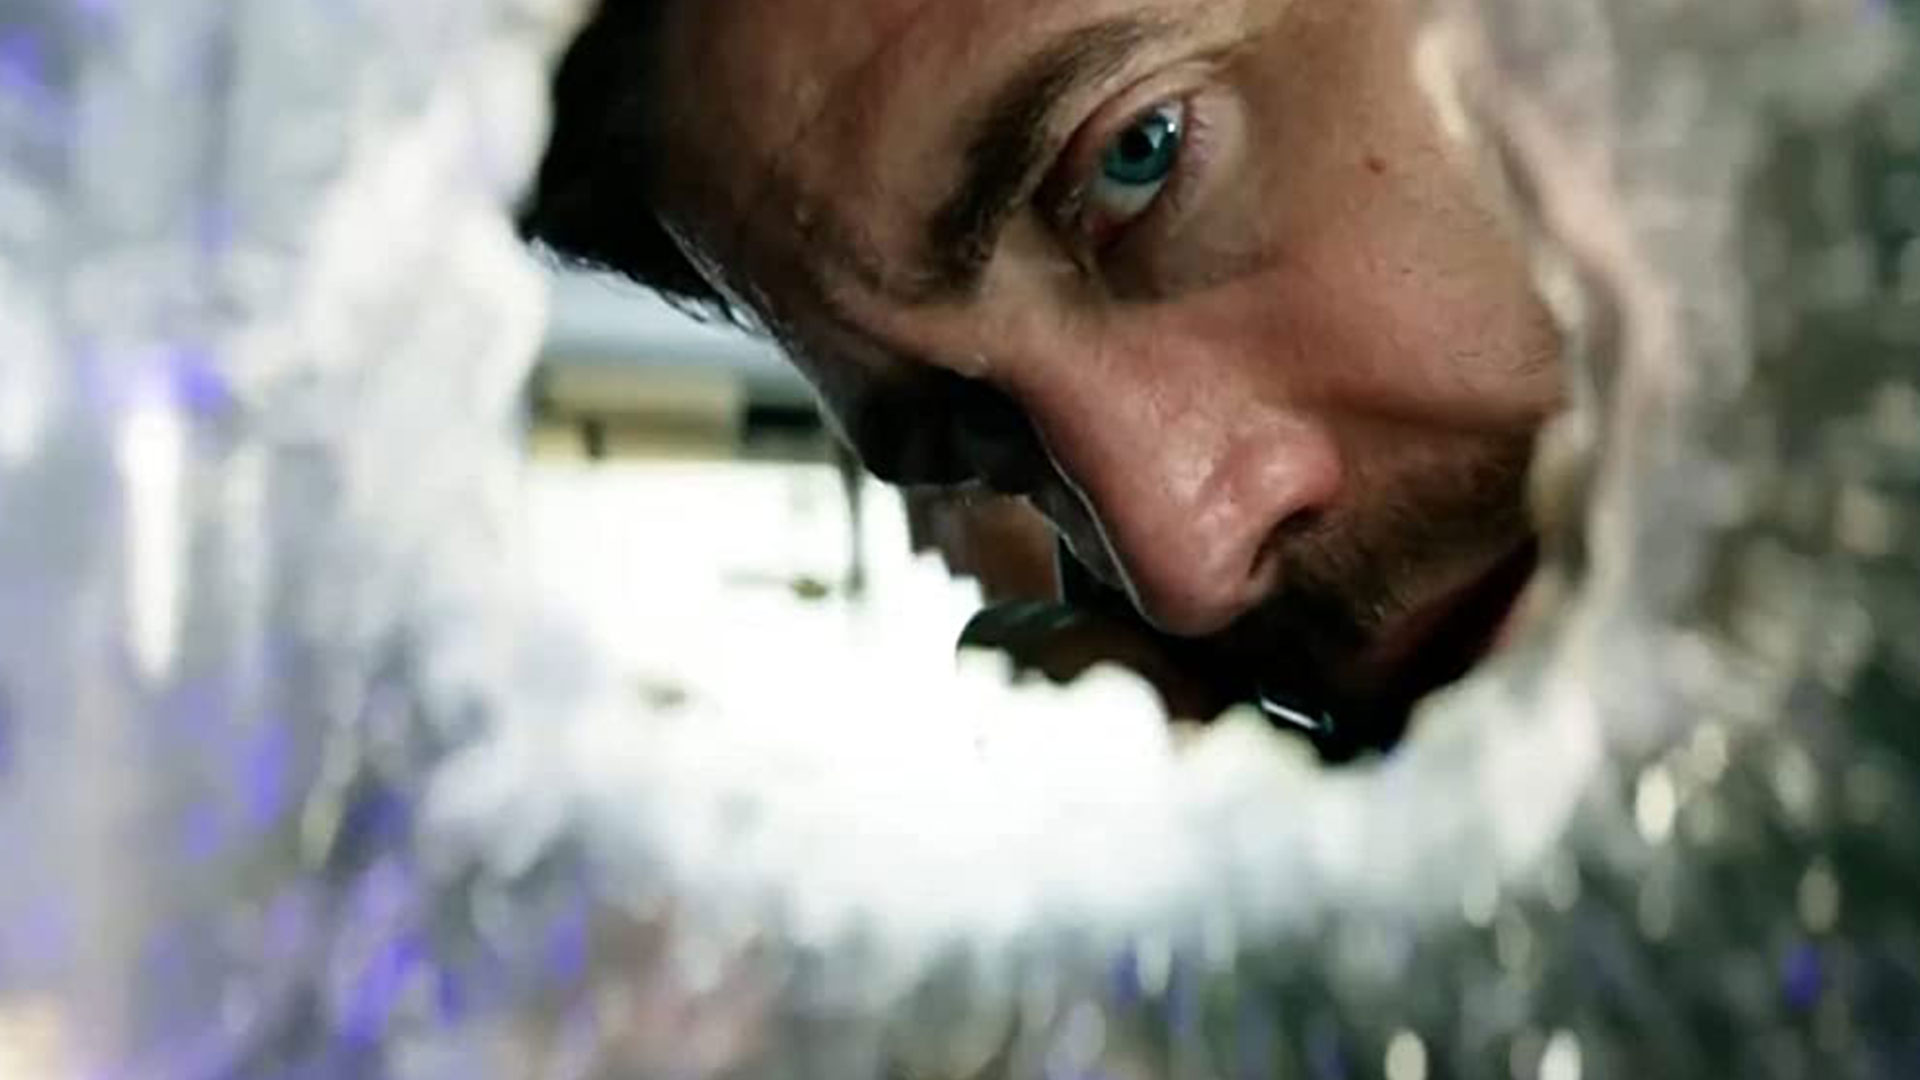 جینلهال در حال نگاه کردن به سوراخ شیشه در فیلم آمبولانس